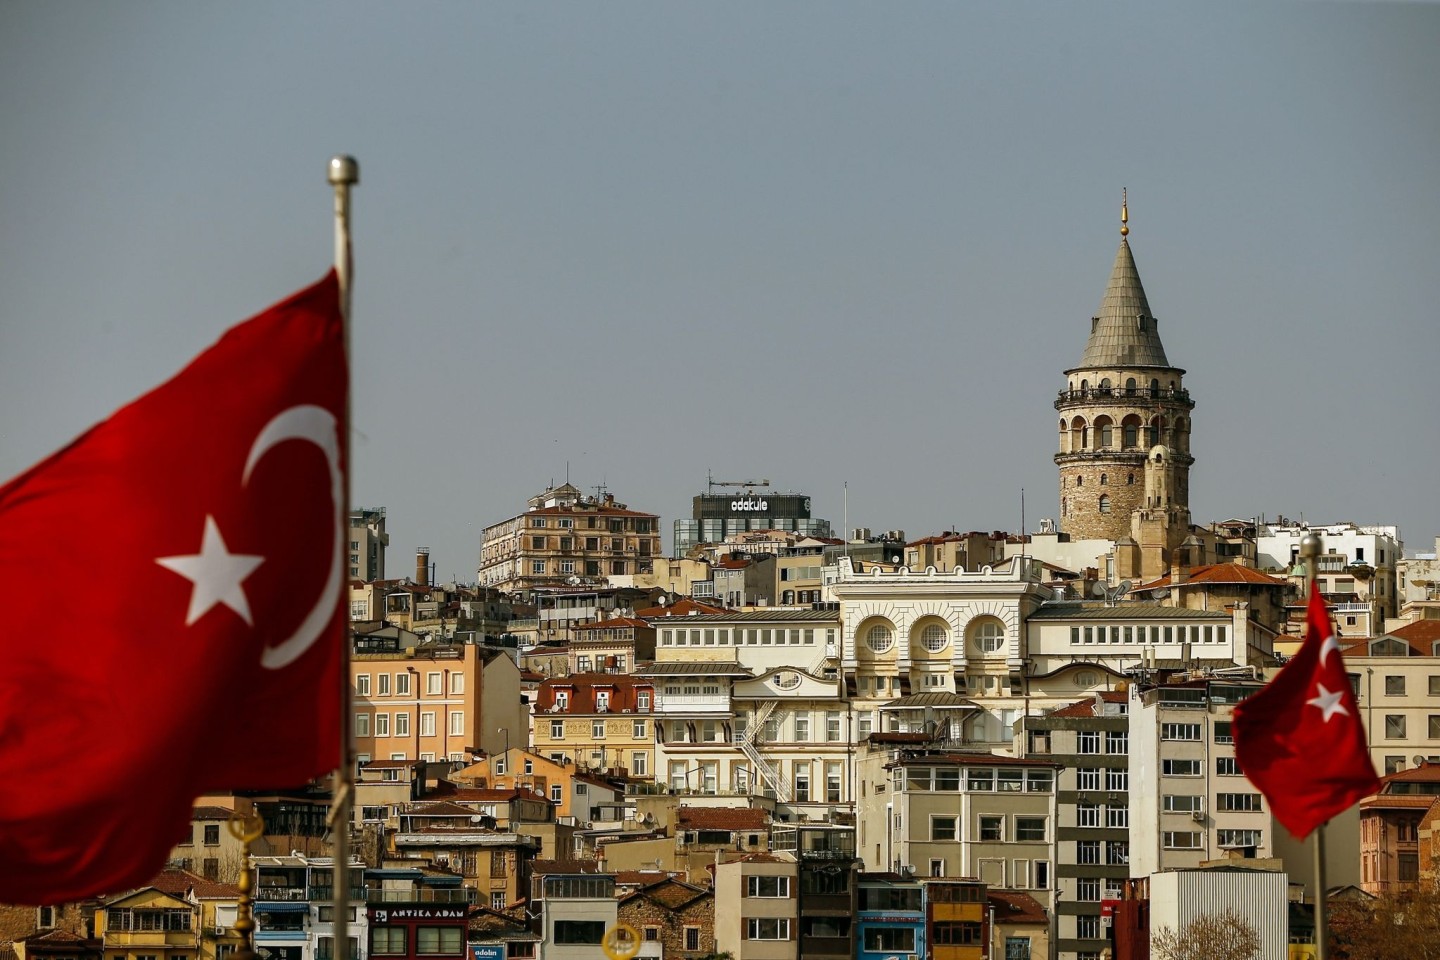 Der Region Istanbul droht nach Experteneinschätzung ein schweres Erdbeben in den nächsten Jahren oder Jahrzehnten.